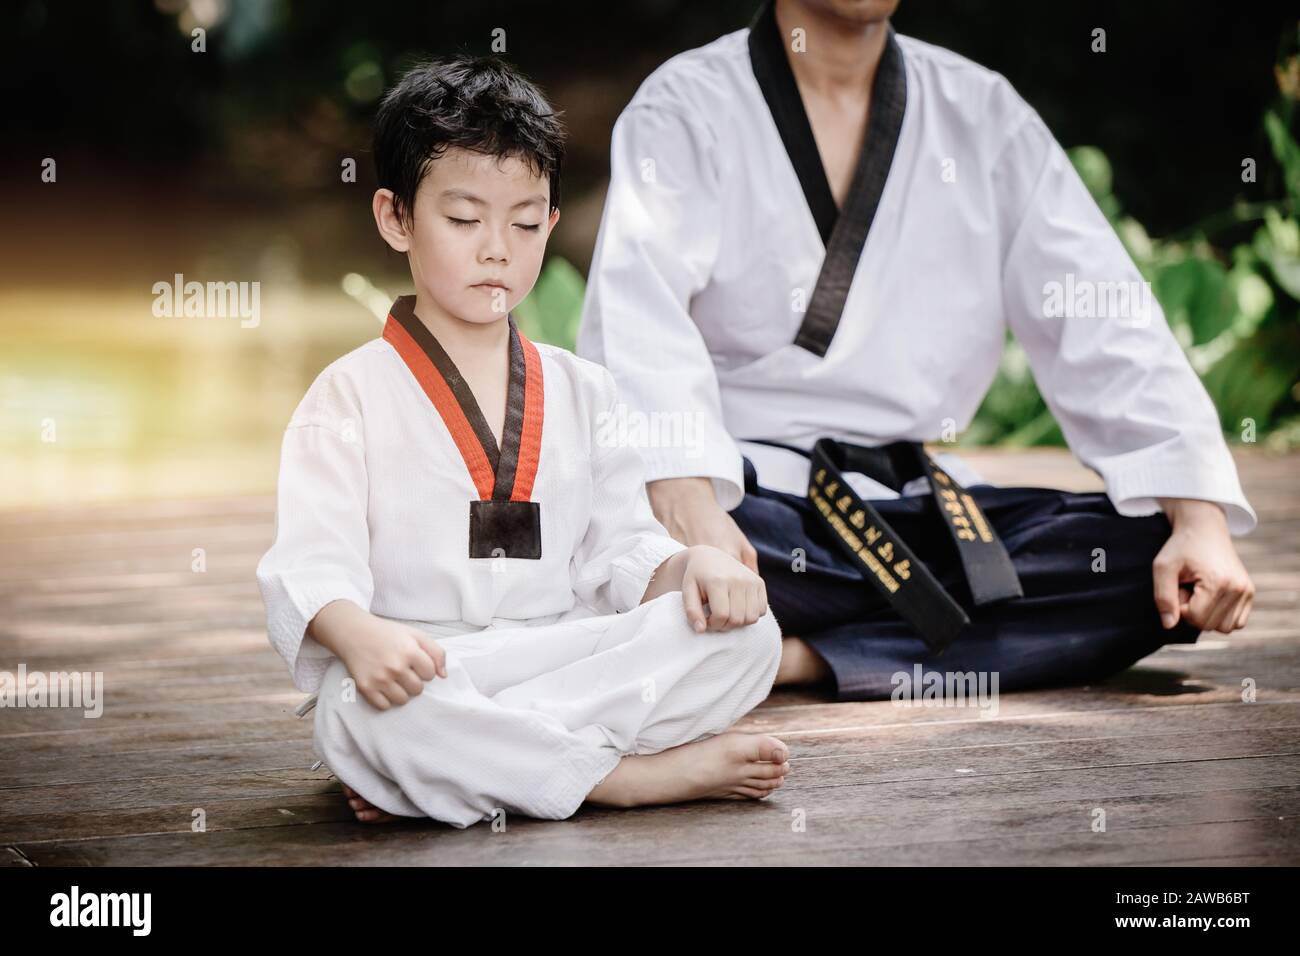 Chasseur enfant à Taekwondo uniforme assis concentration pour l'entraînement corps de légitime défense et doux. Banque D'Images